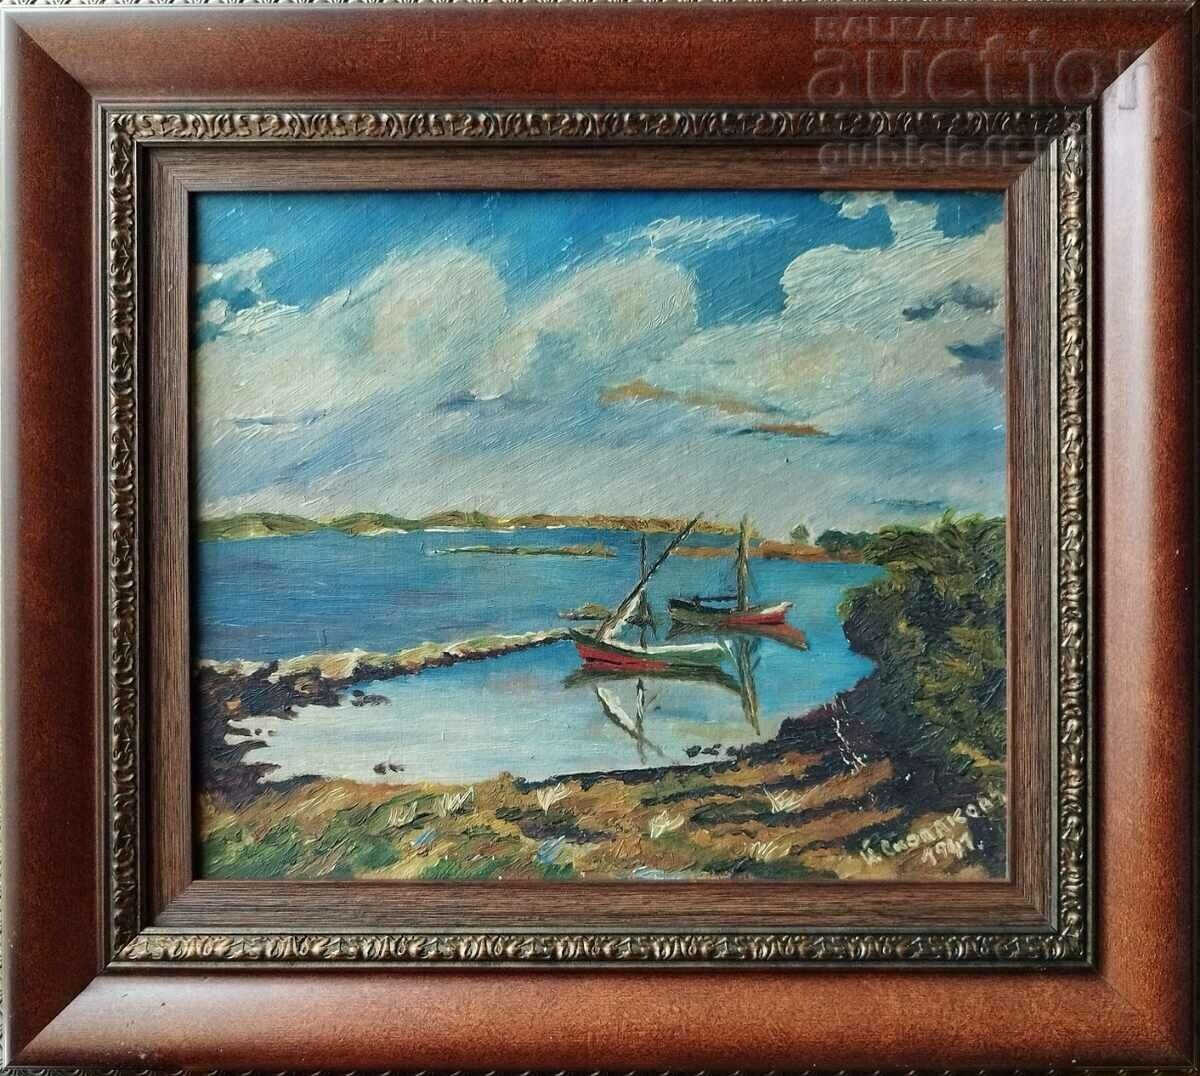 Ζωγραφική, βάρκες, θάλασσα, τέχνη. Y. Skolakovu, 1941